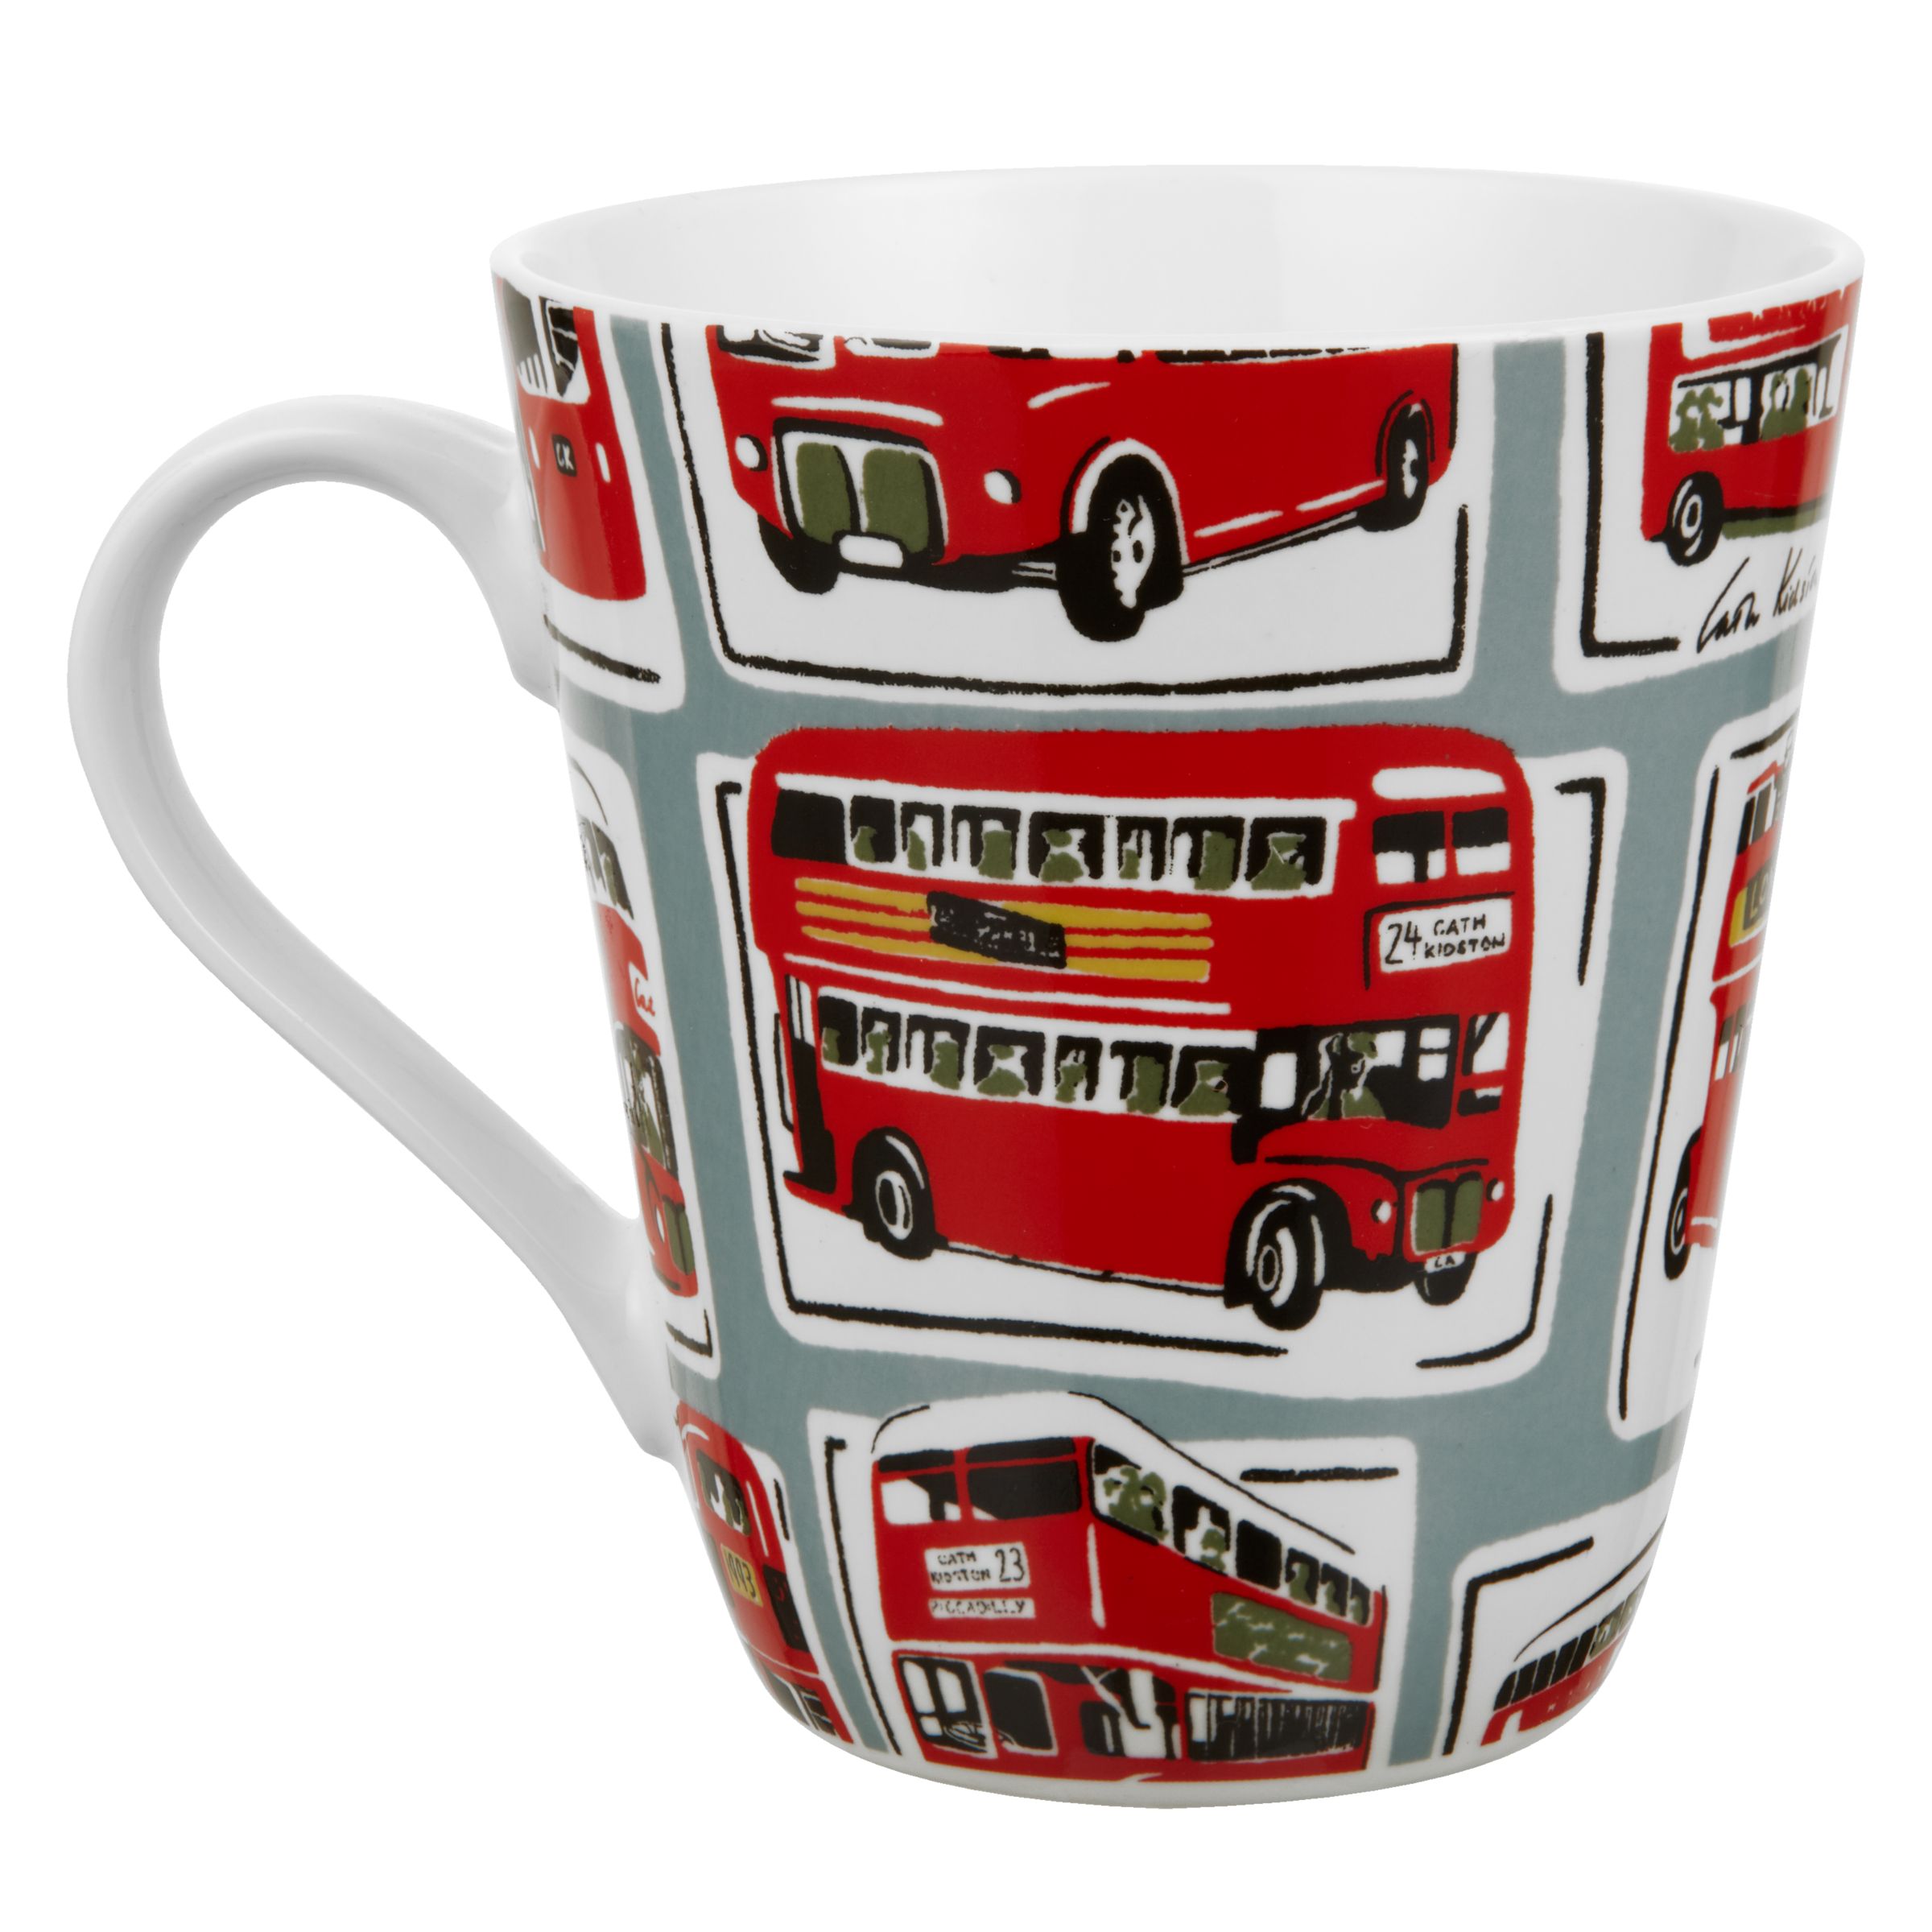 cath kidston ceramic travel mug